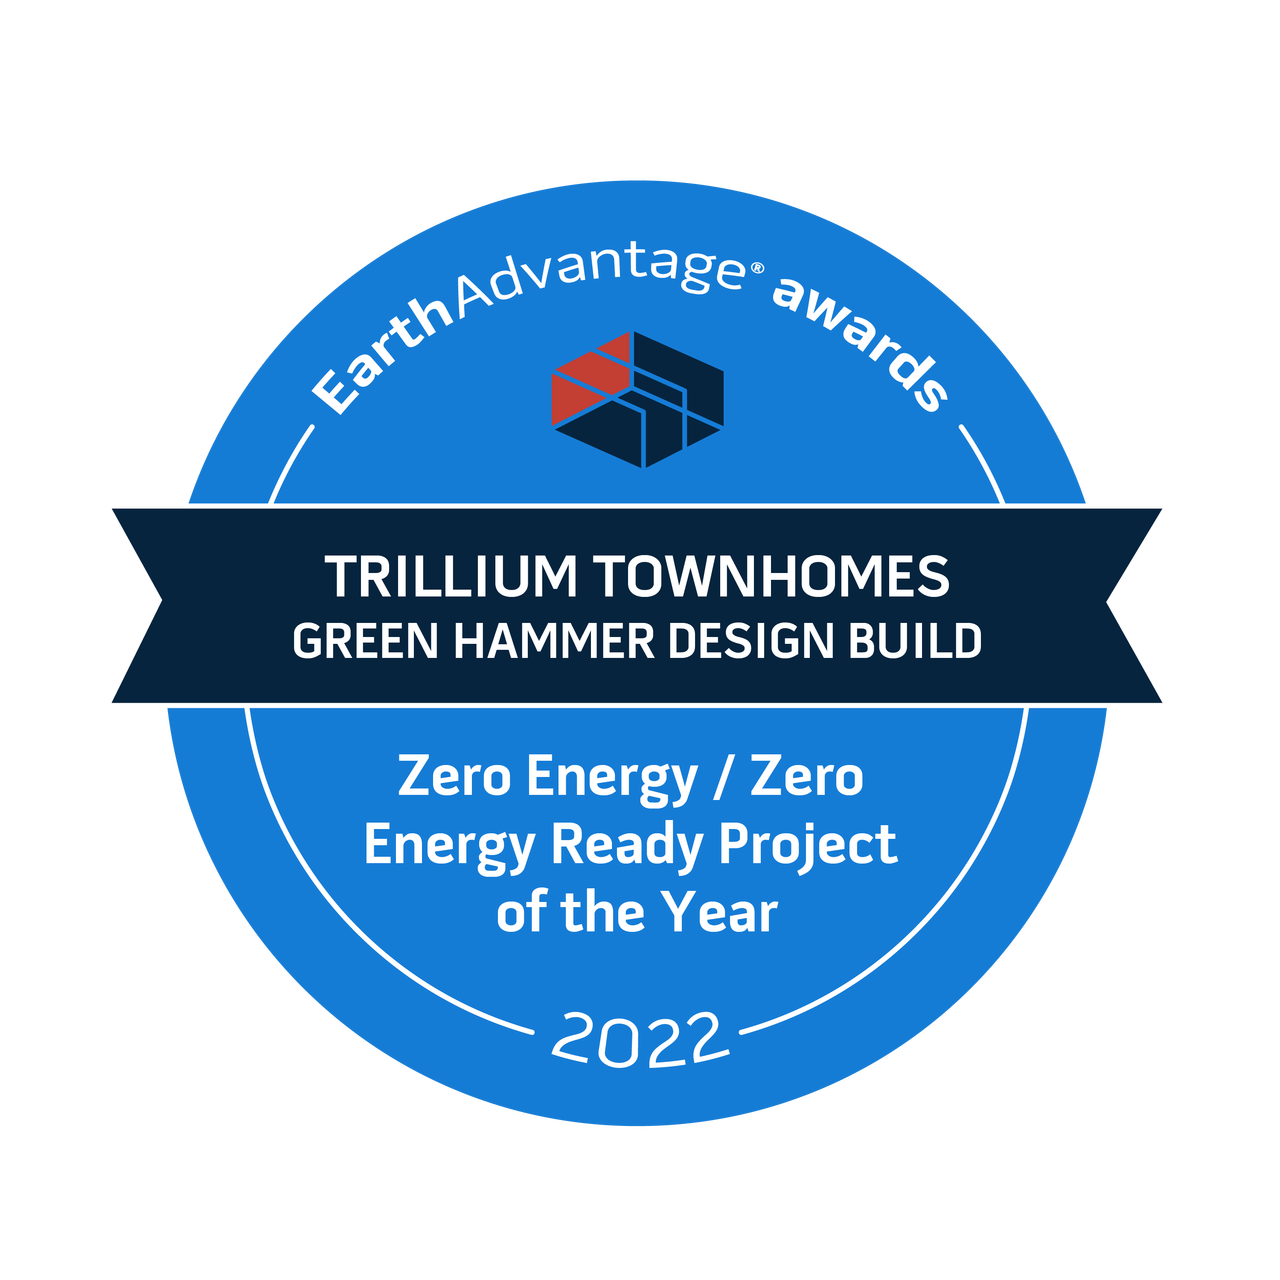 Zero Energy / Zero Energy Ready Project of the Year